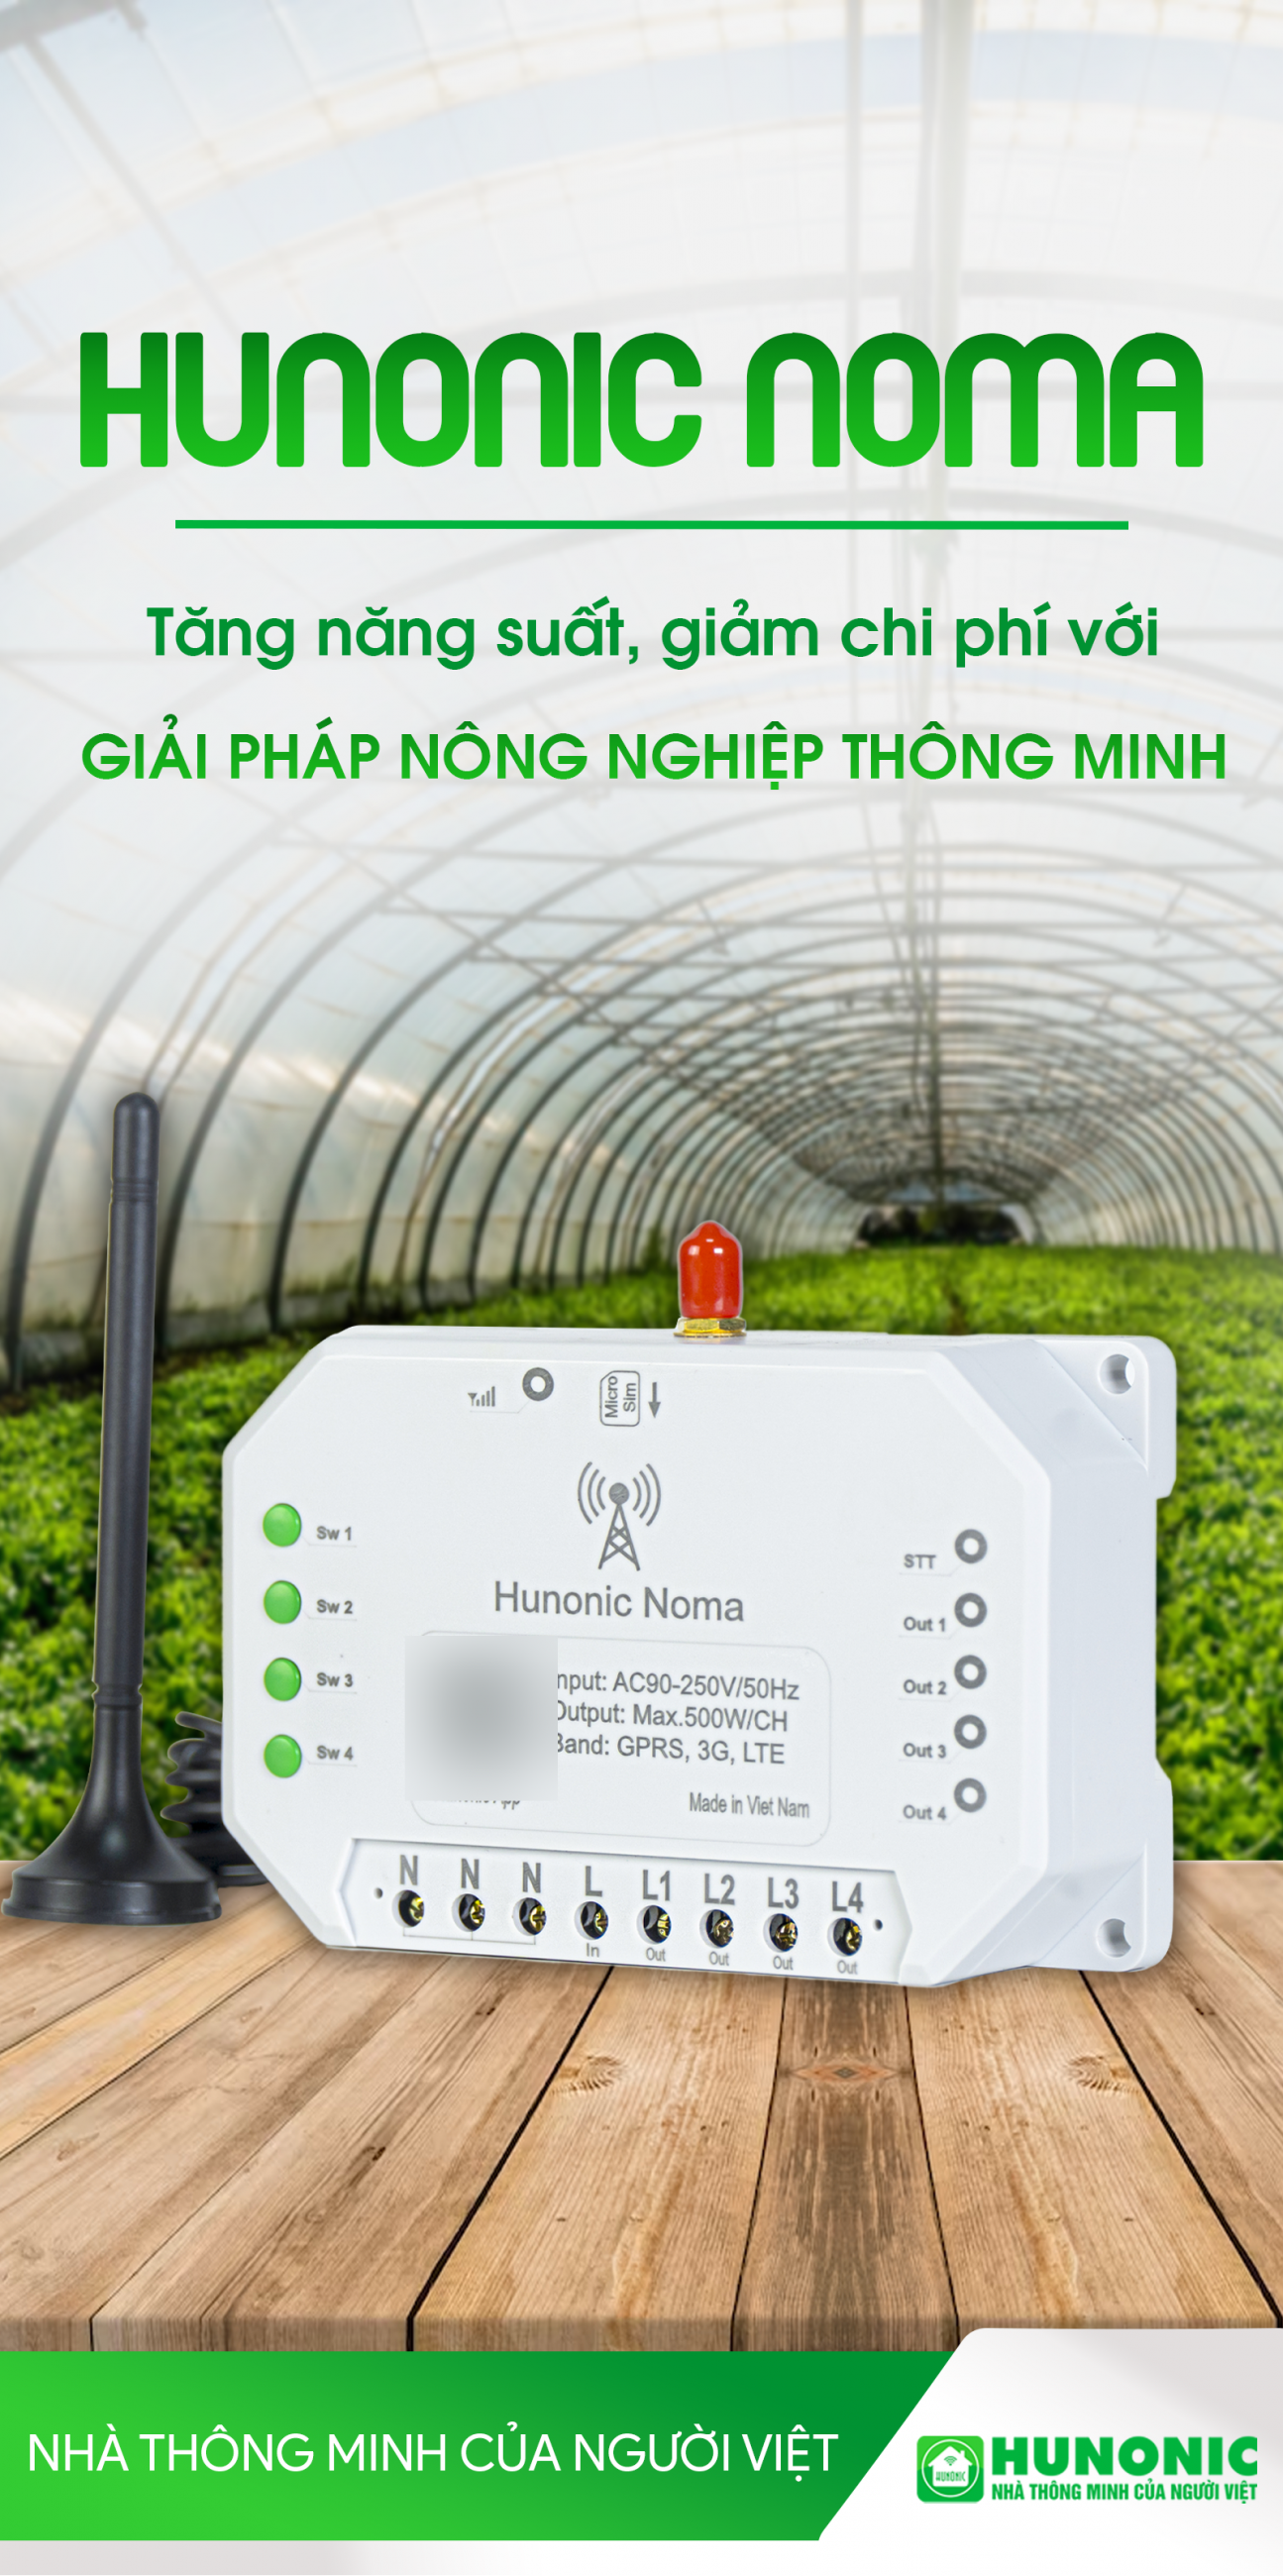 Công tắc Hunonic Noma 4CH – Điều khiển mọi thiết bị từ xa qua điện thoại dùng sim - Chính hãng bảo hành 12 tháng